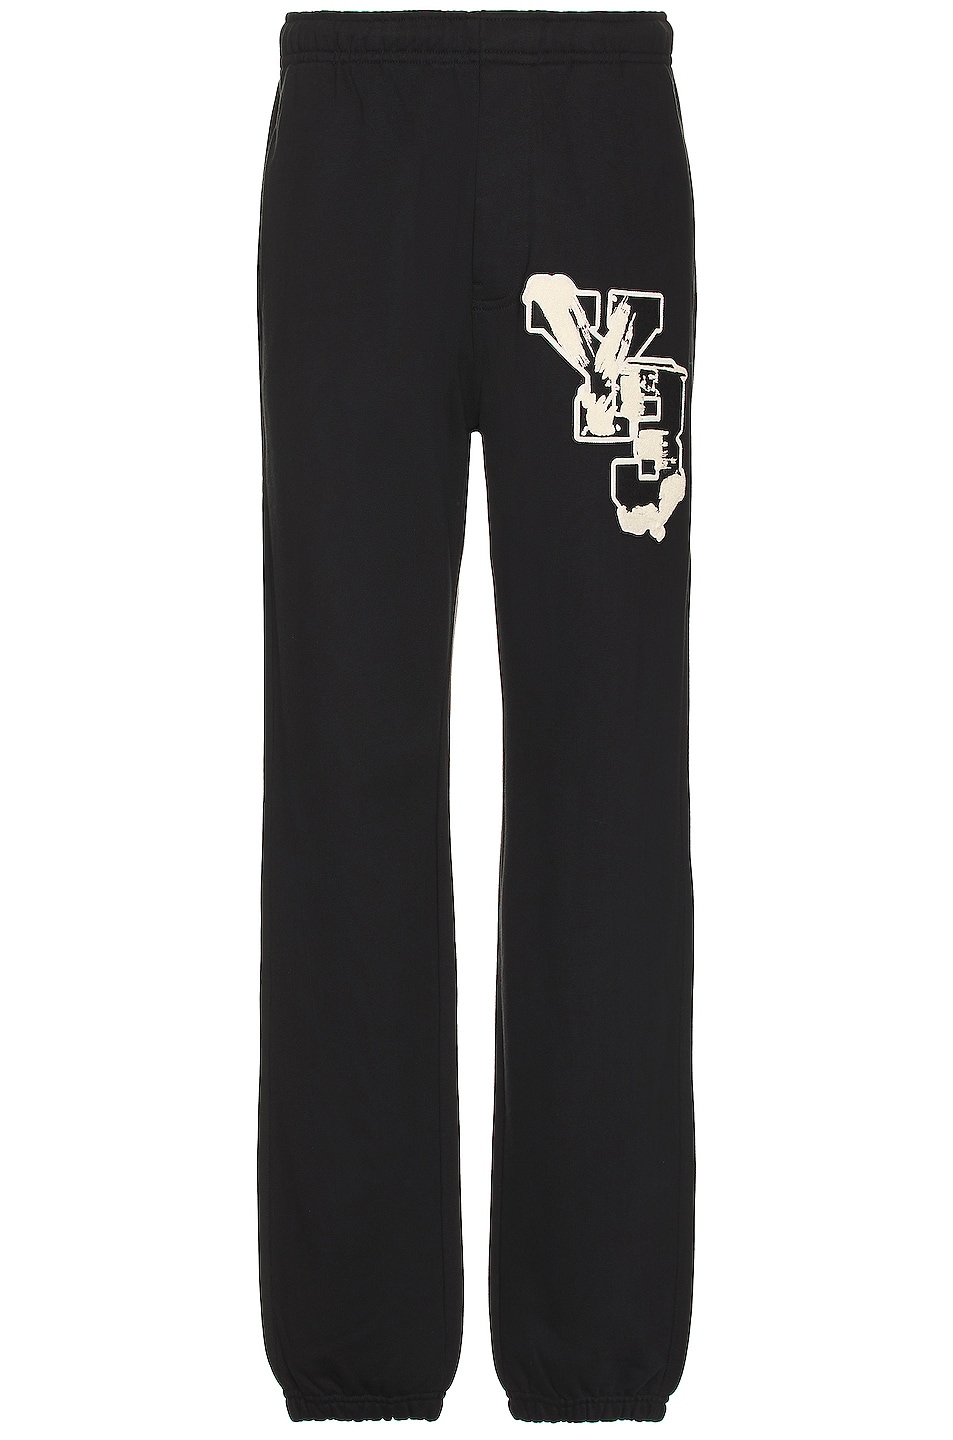 Image 1 of Y-3 Yohji Yamamoto Gfx Ft Pants in black